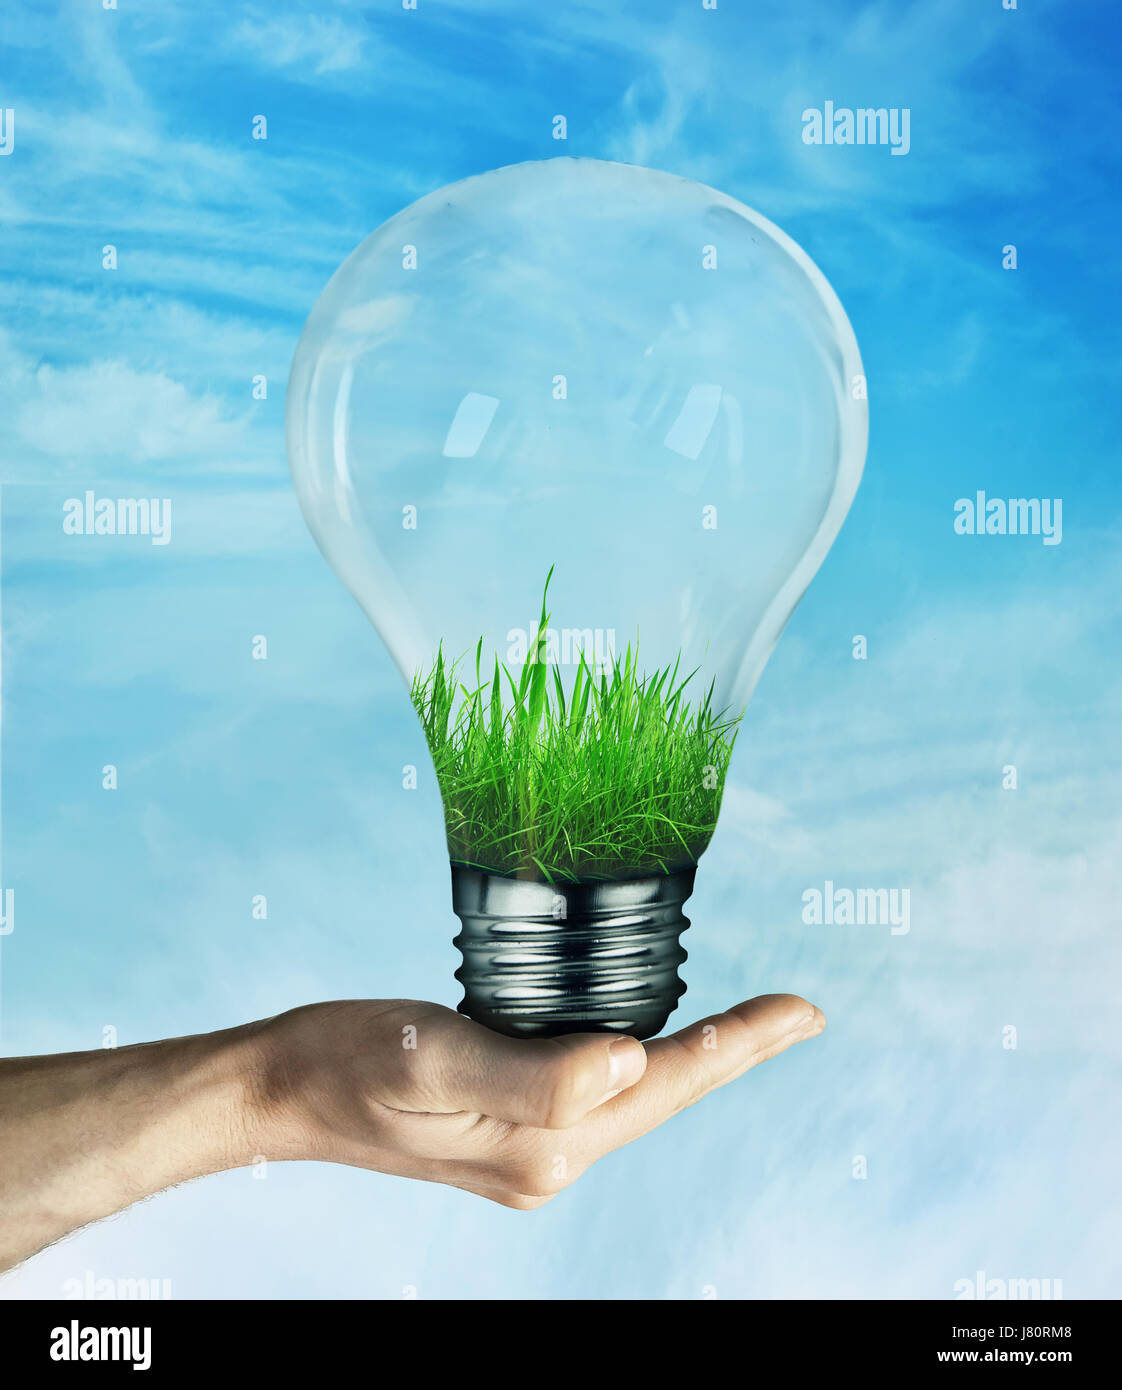 Mano umana tenendo un bulbo di luce con erba verde cresce dentro, sul cielo blu sullo sfondo. Concetto di risparmio energetico, ecologico ecologia. Foto Stock